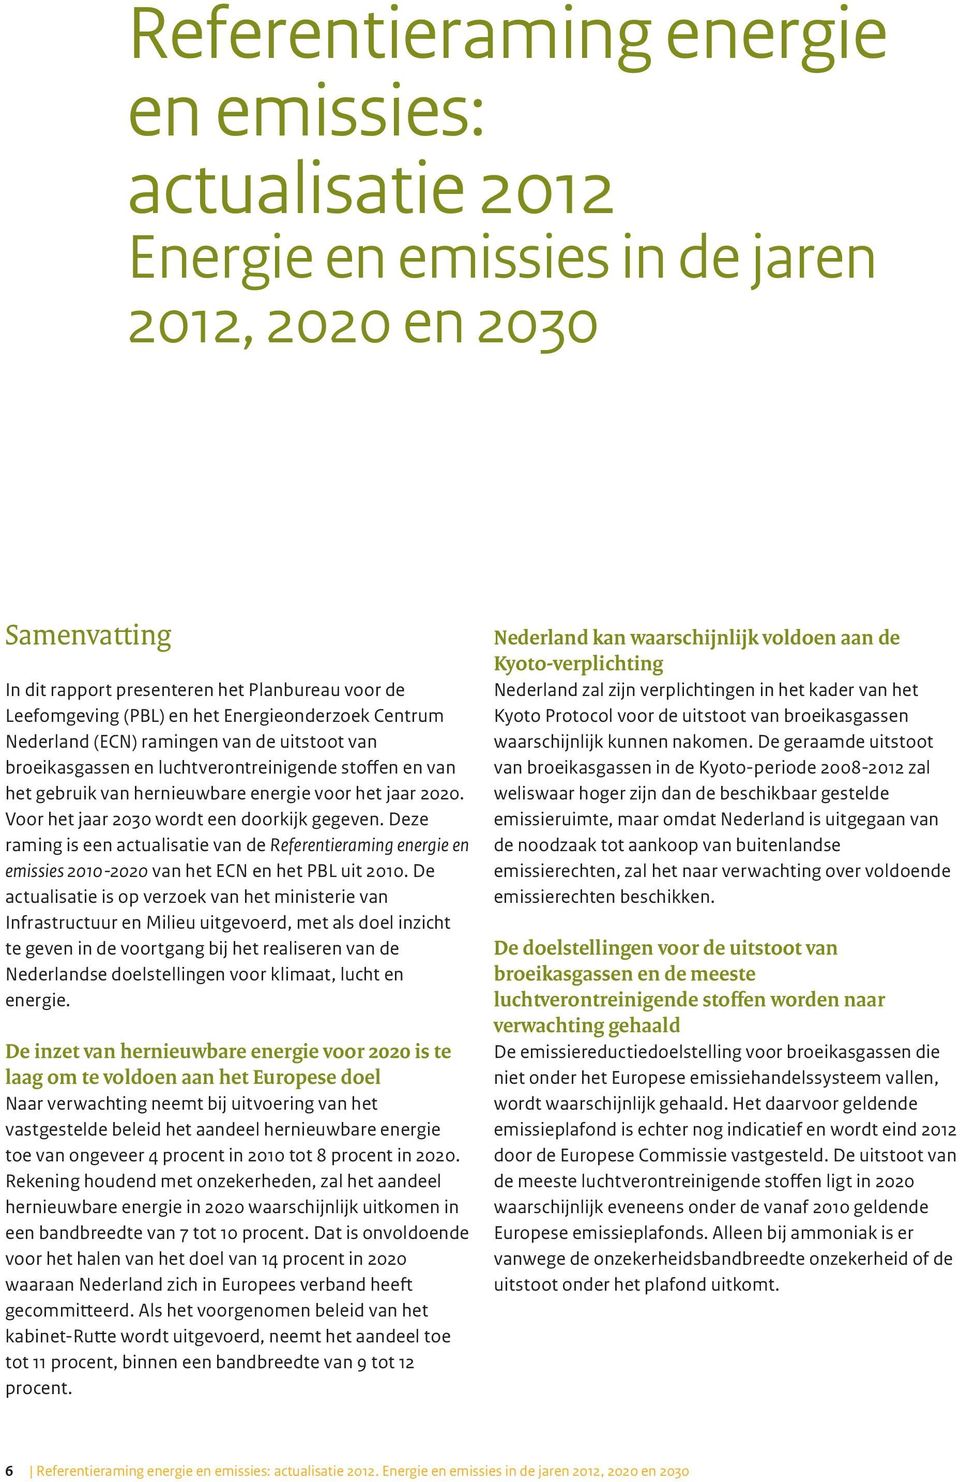 Voor het jaar 2030 wordt een doorkijk gegeven. Deze raming is een actualisatie van de Referentieraming energie en emissies 2010-2020 van het ECN en het PBL uit 2010.